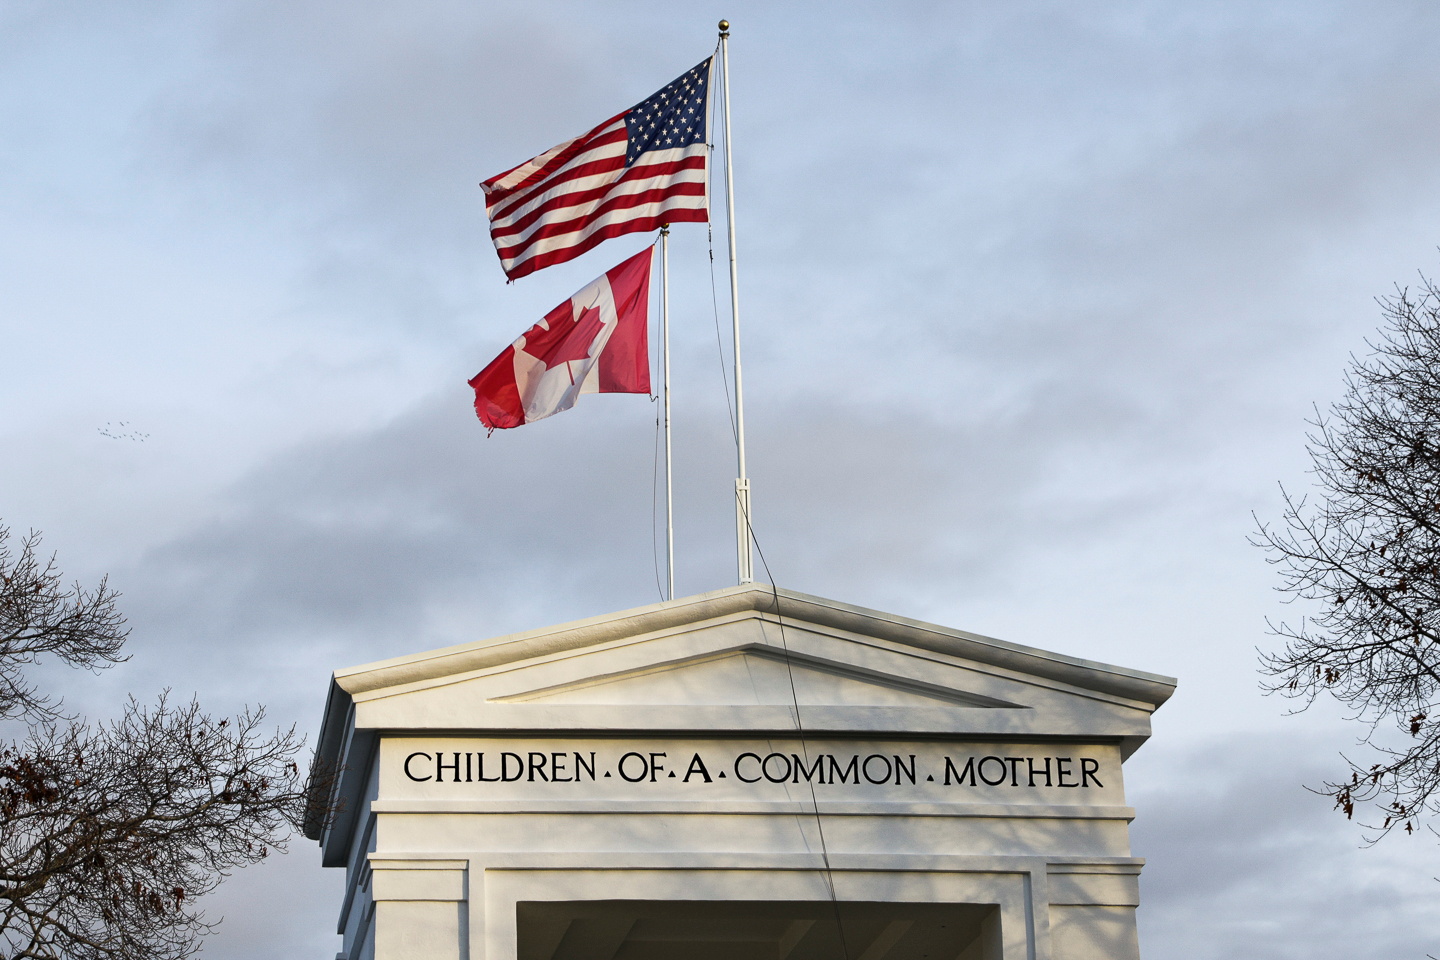 Cruce fronterizo Estados Unidos-Canadá